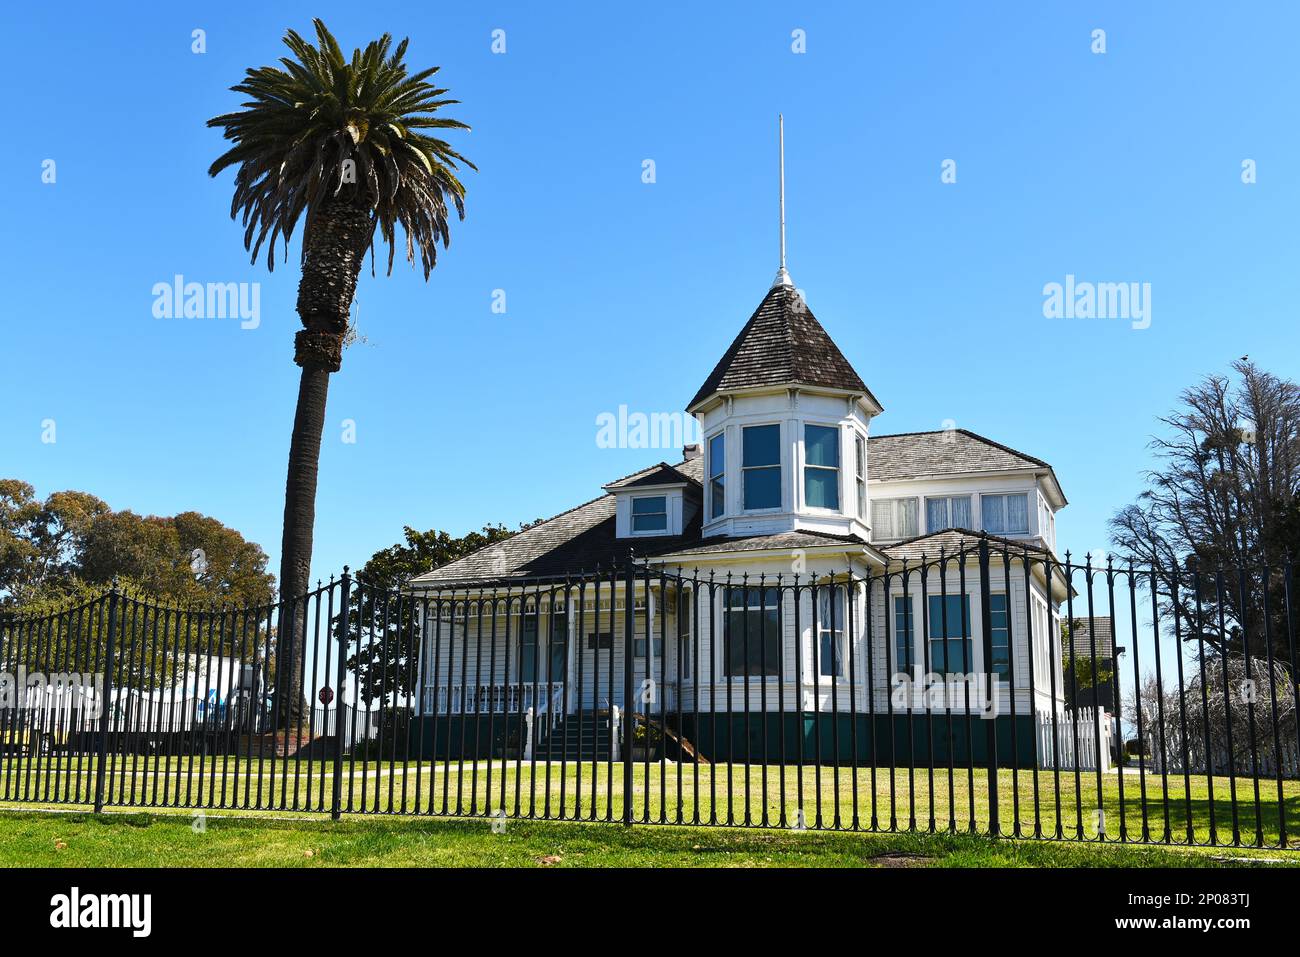 HUNTINGTON BEACH, KALIFORNIEN - 02. MÄRZ 2023: Newland House ist ein Bauernhaus aus dem Jahr 1898 im Queen Anne-Architekturstil, die älteste Residenz in HB und Listen Stockfoto